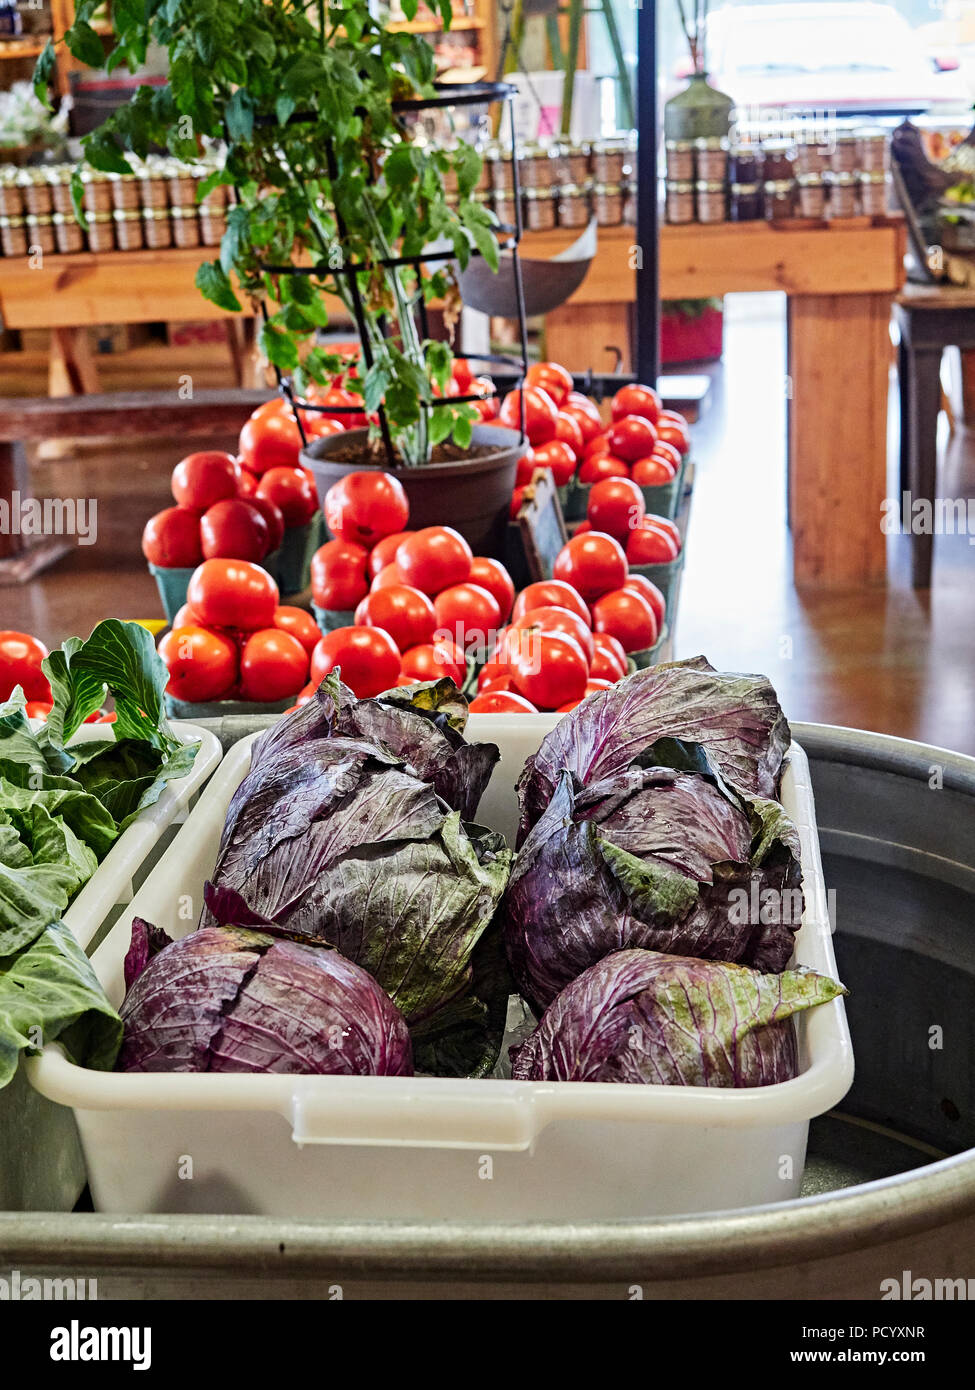 Frischen Rotkohl, Basilikum und Tomaten auf Anzeige, zu verkaufen, in ein strassenrand Bauernhof oder Wochenmarkt in ländlichen Alabama, USA. Stockfoto